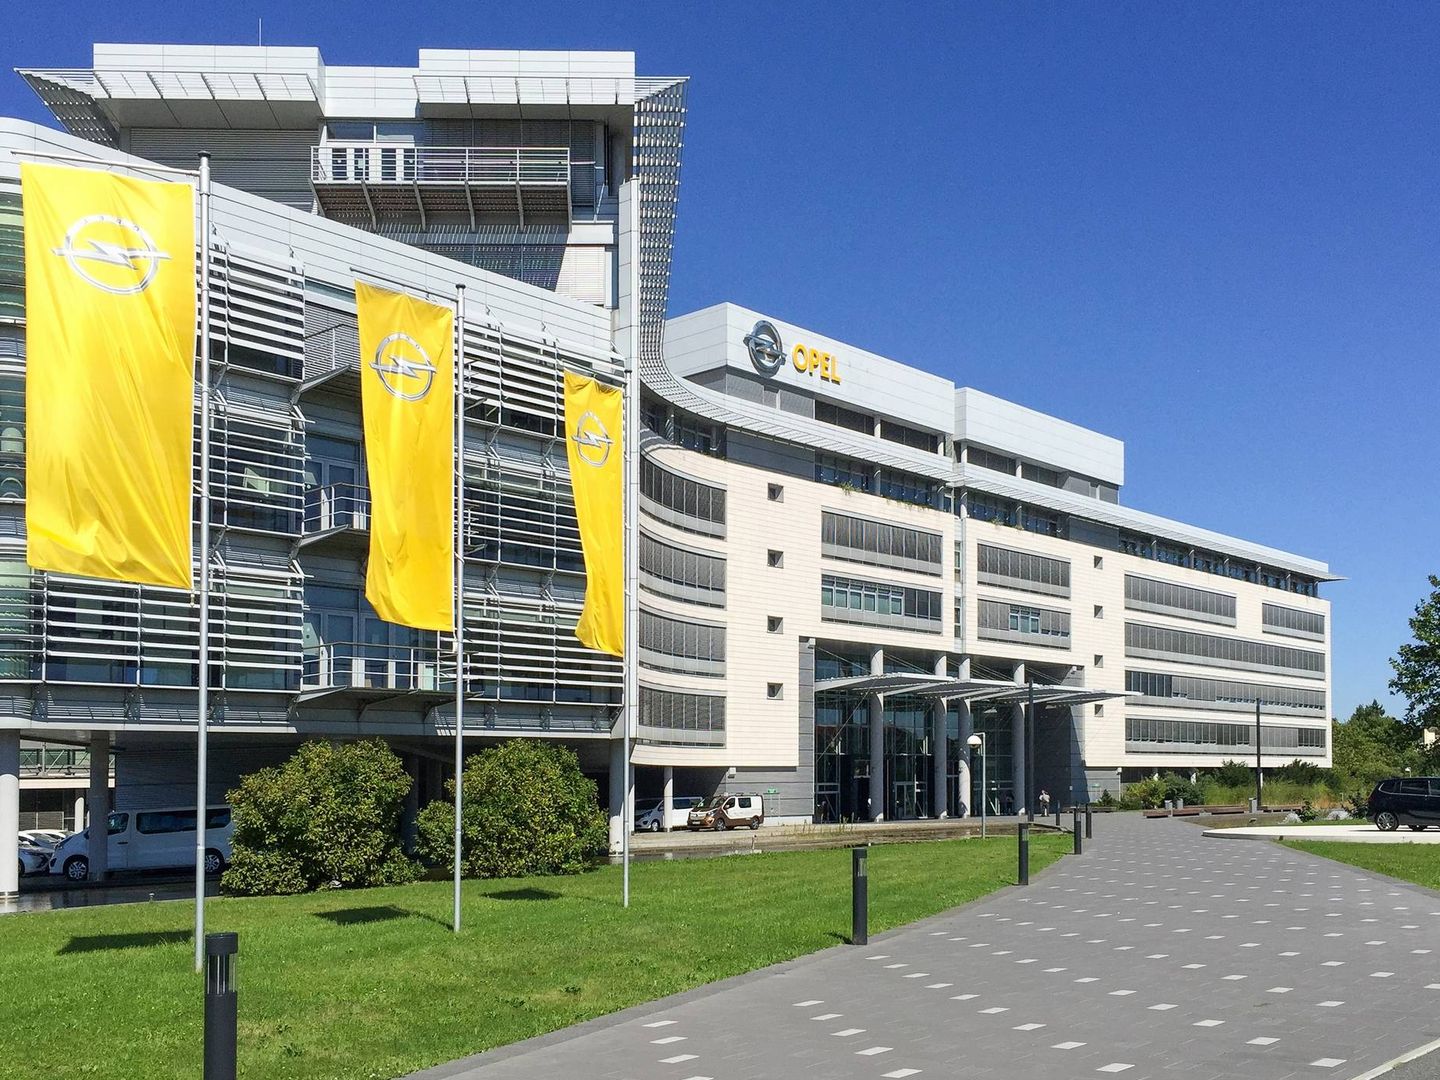 Russelsheim será el centro de desarrollo de Opel